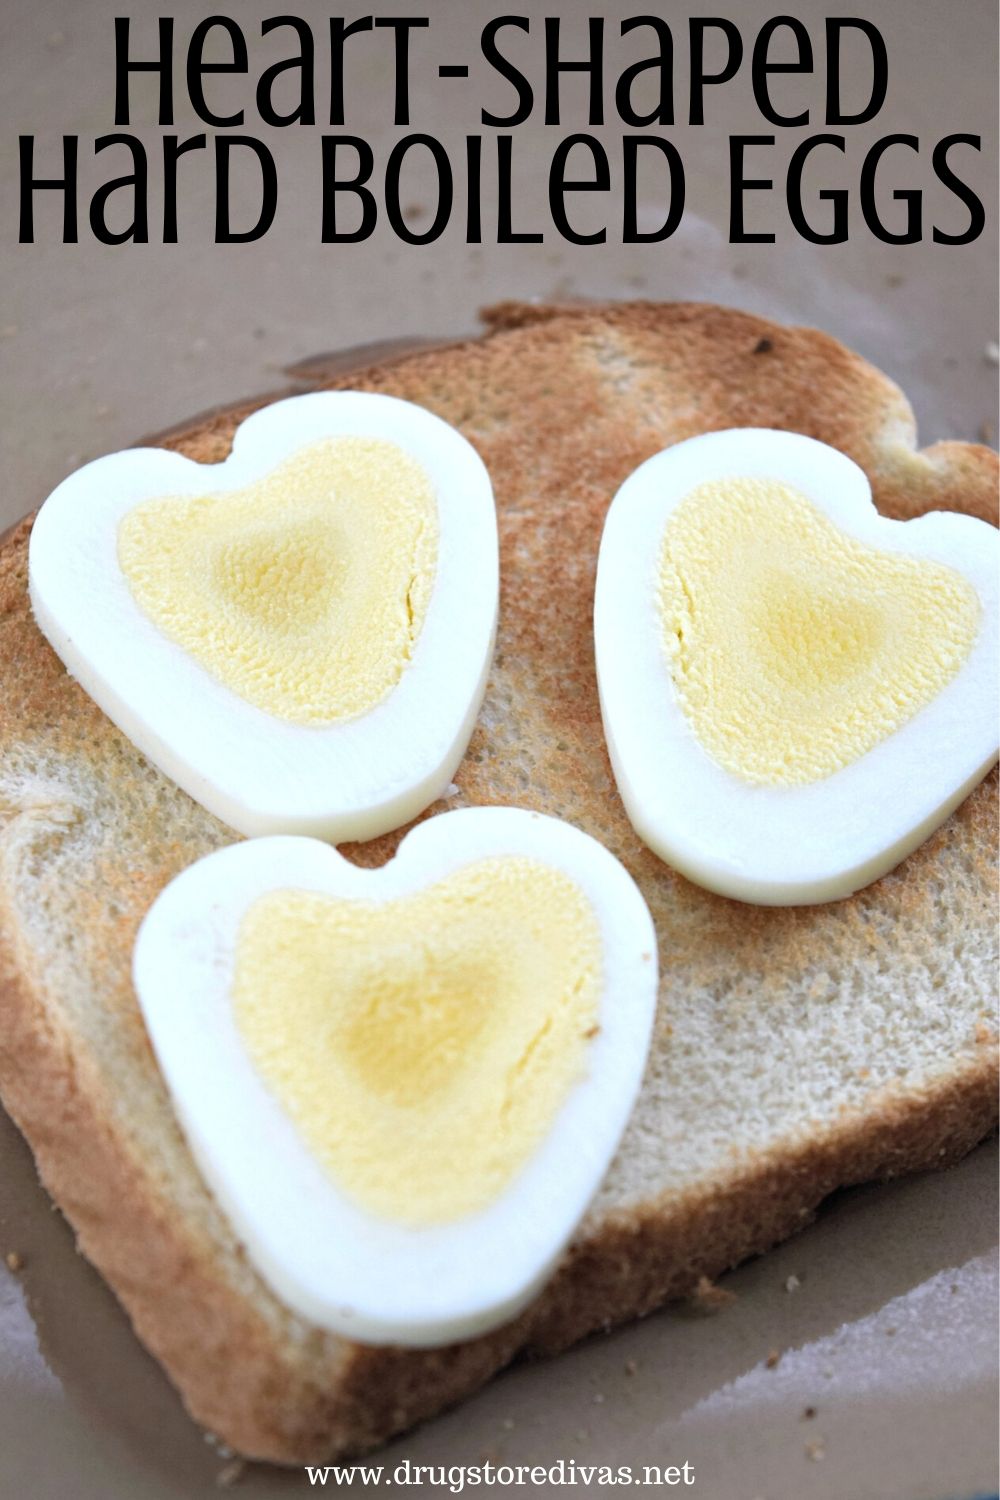 Heart-Shaped Hard-Boiled Eggs Recipe | Drugstore Divas